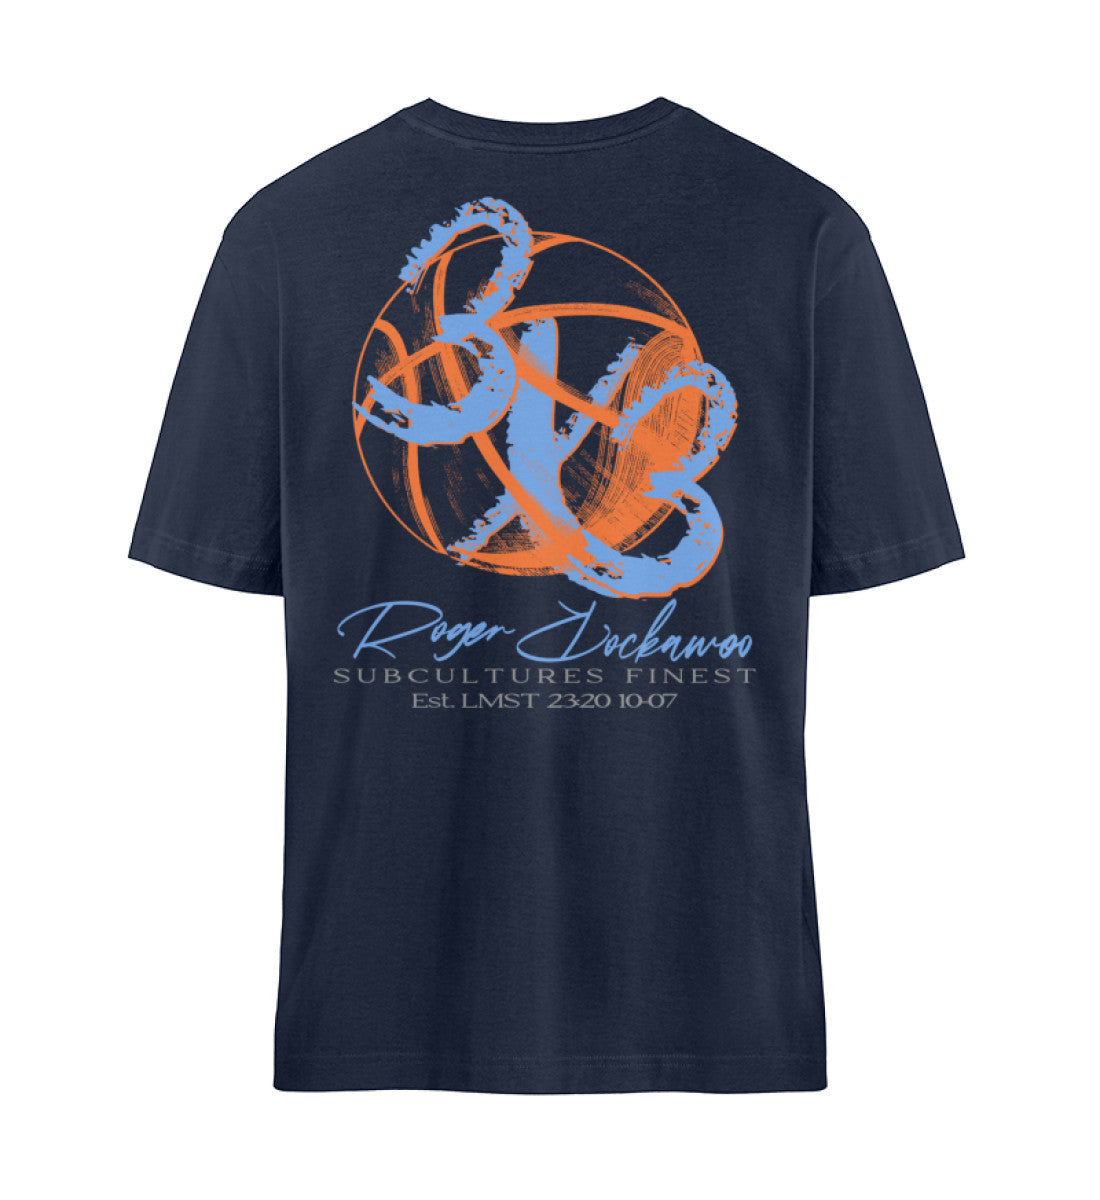 French Navy Blue T-Shirt Unisex Relaxed Fit für Frauen und Männer bedruckt mit dem Design der Roger Rockawoo Kollektion Basketball 3X3 Check Ball